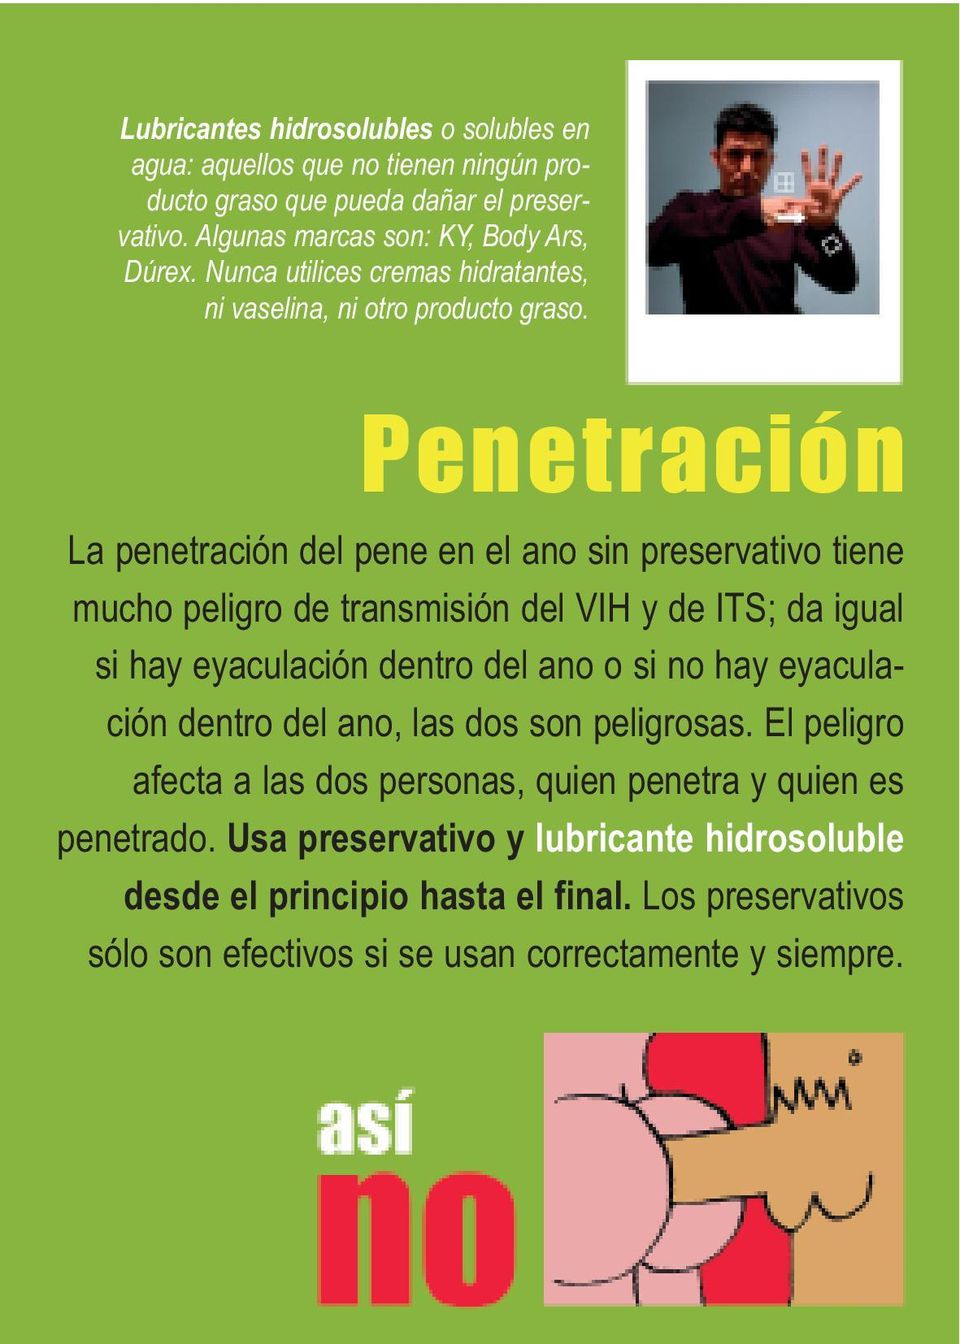 Penetración La penetración del pene en el ano sin preservativo tiene mucho peligro de transmisión del VIH y de ITS; da igual si hay eyaculación dentro del ano o si no hay